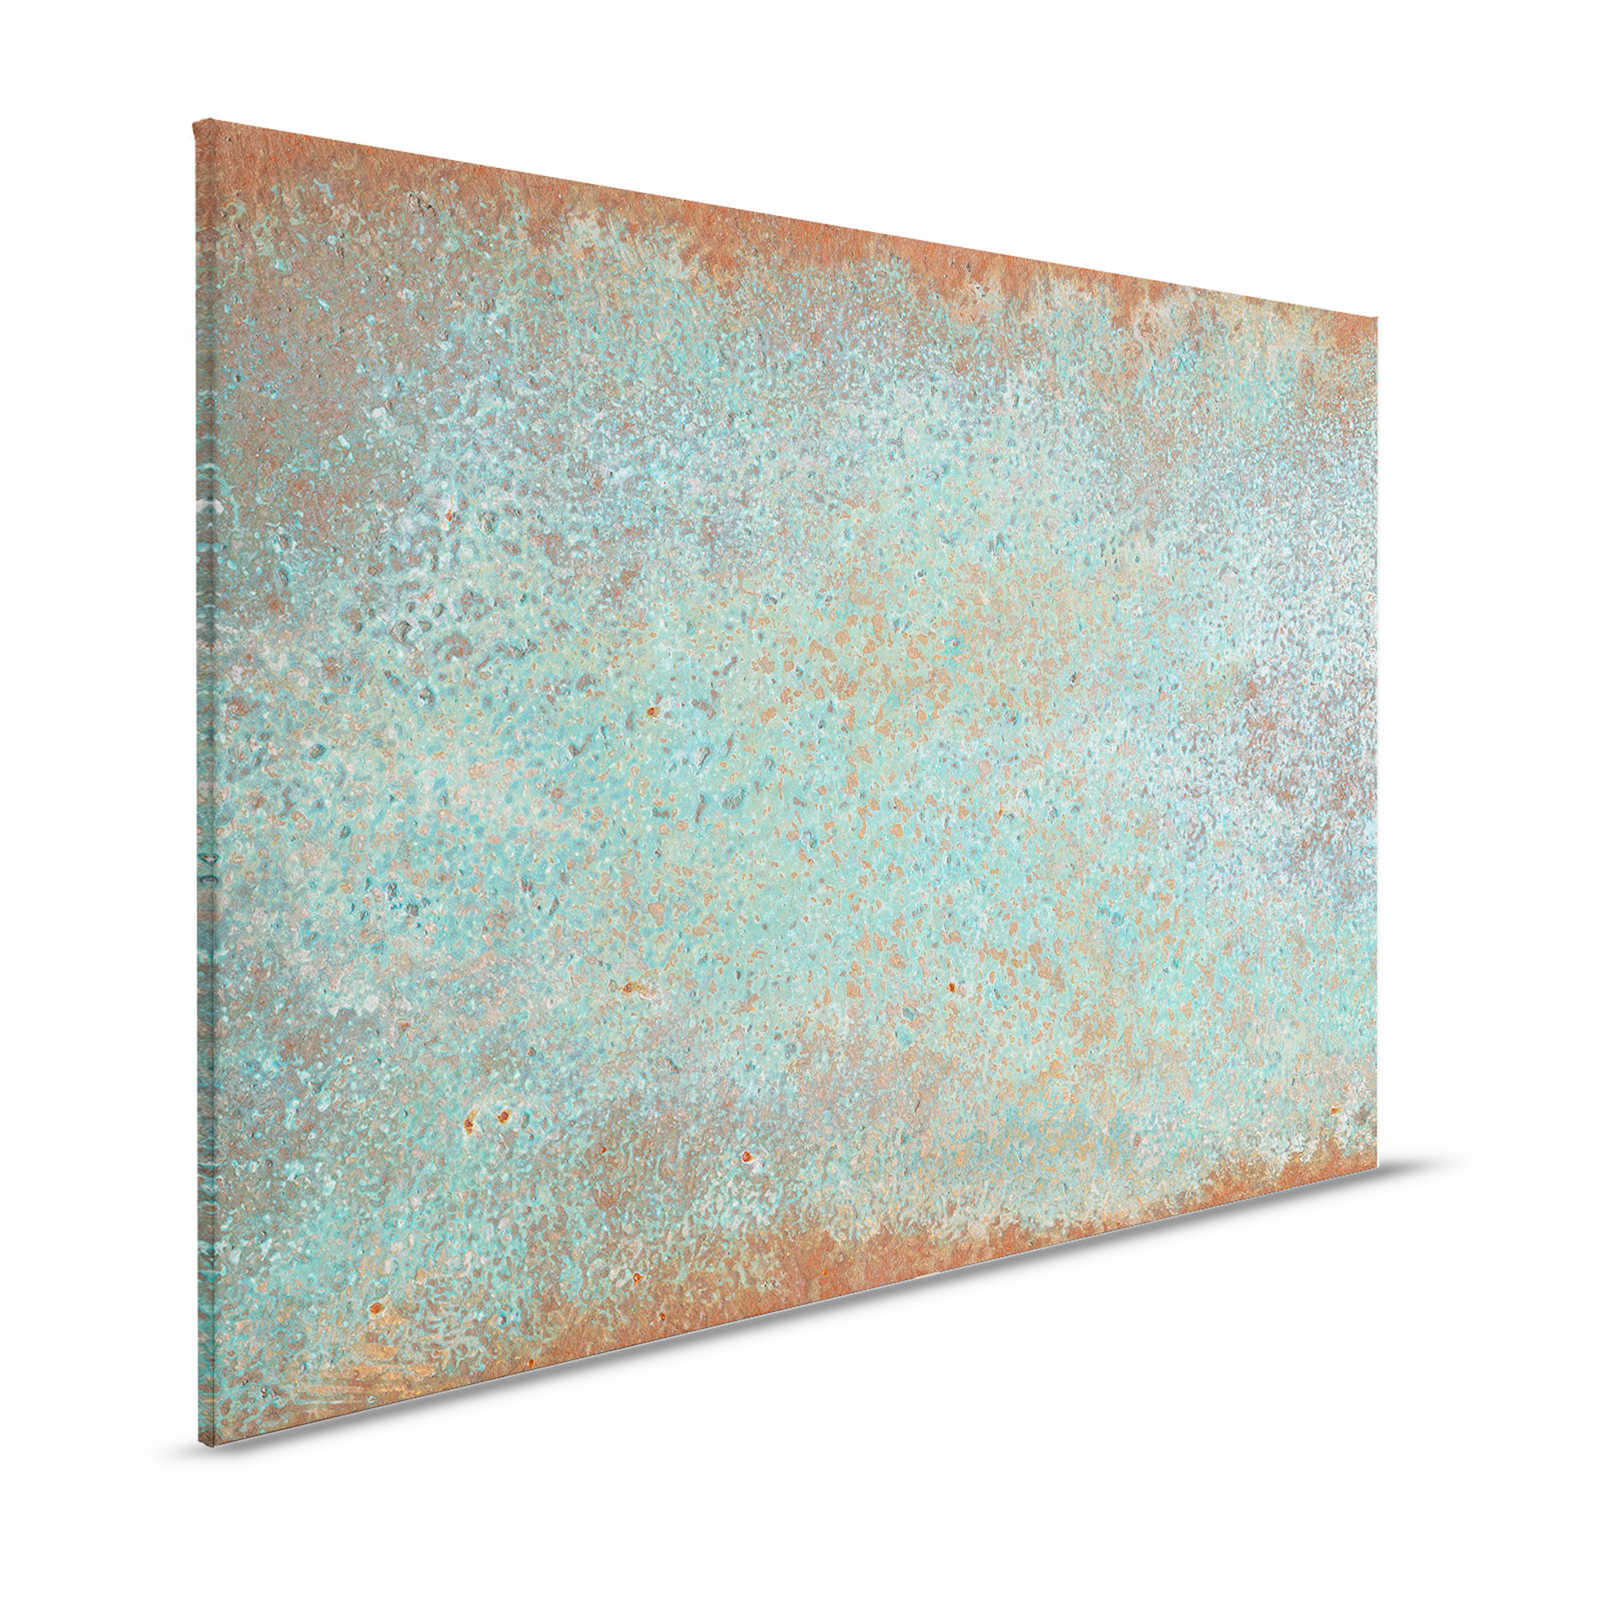 Toile aspect métal patine turquoise avec rouille - 1,20 m x 0,80 m
